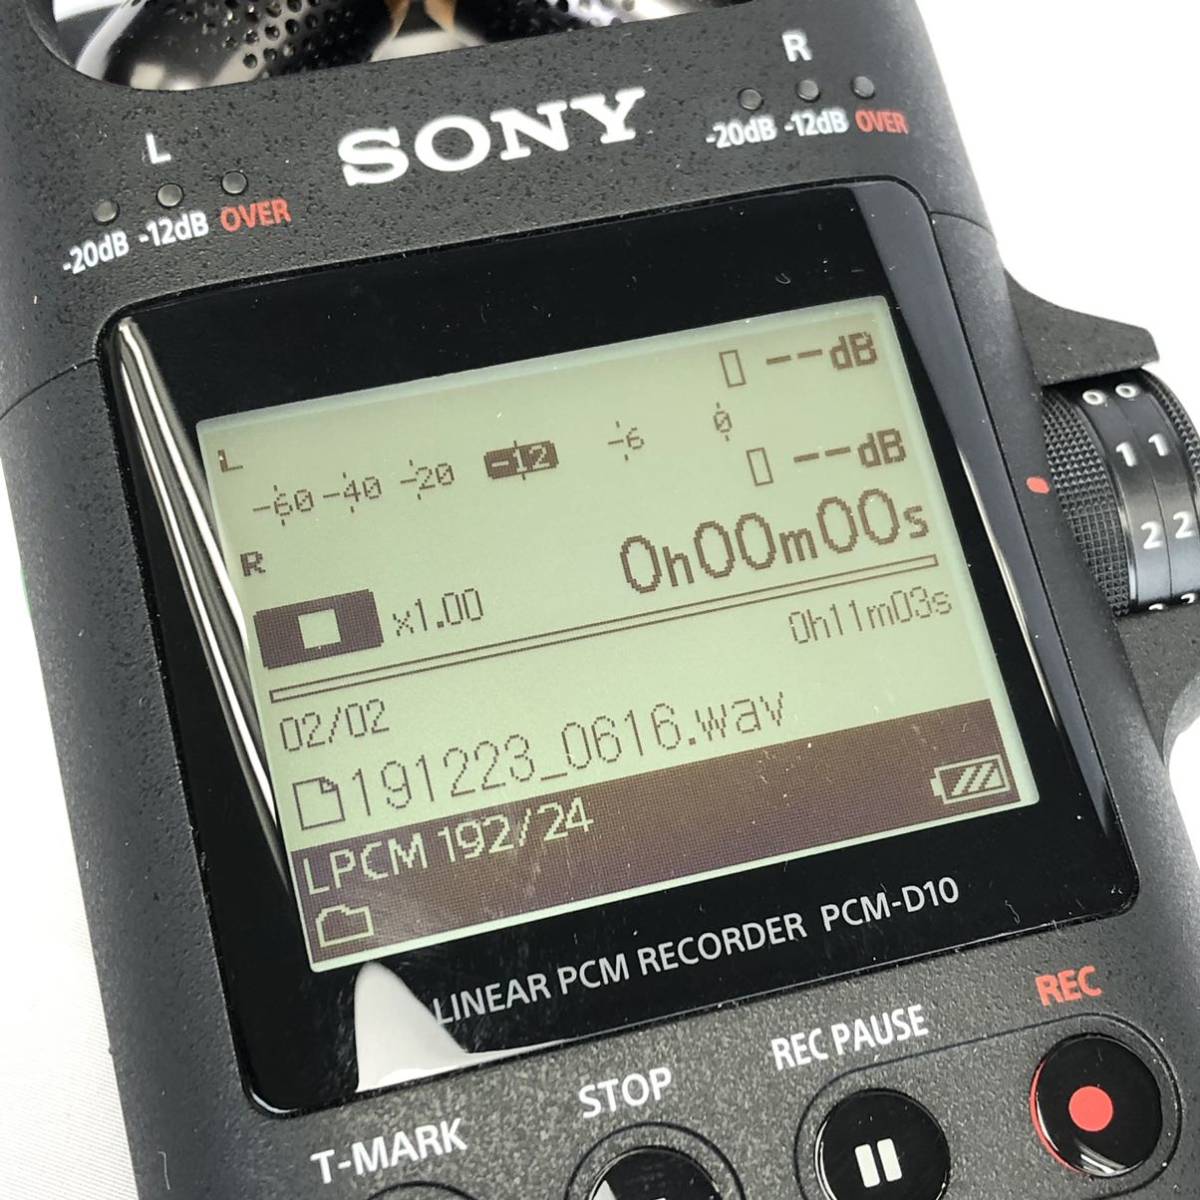 ☆SONY リニアPCMレコーダー PCM-D10☆ソニー ICレコーダー 集音器